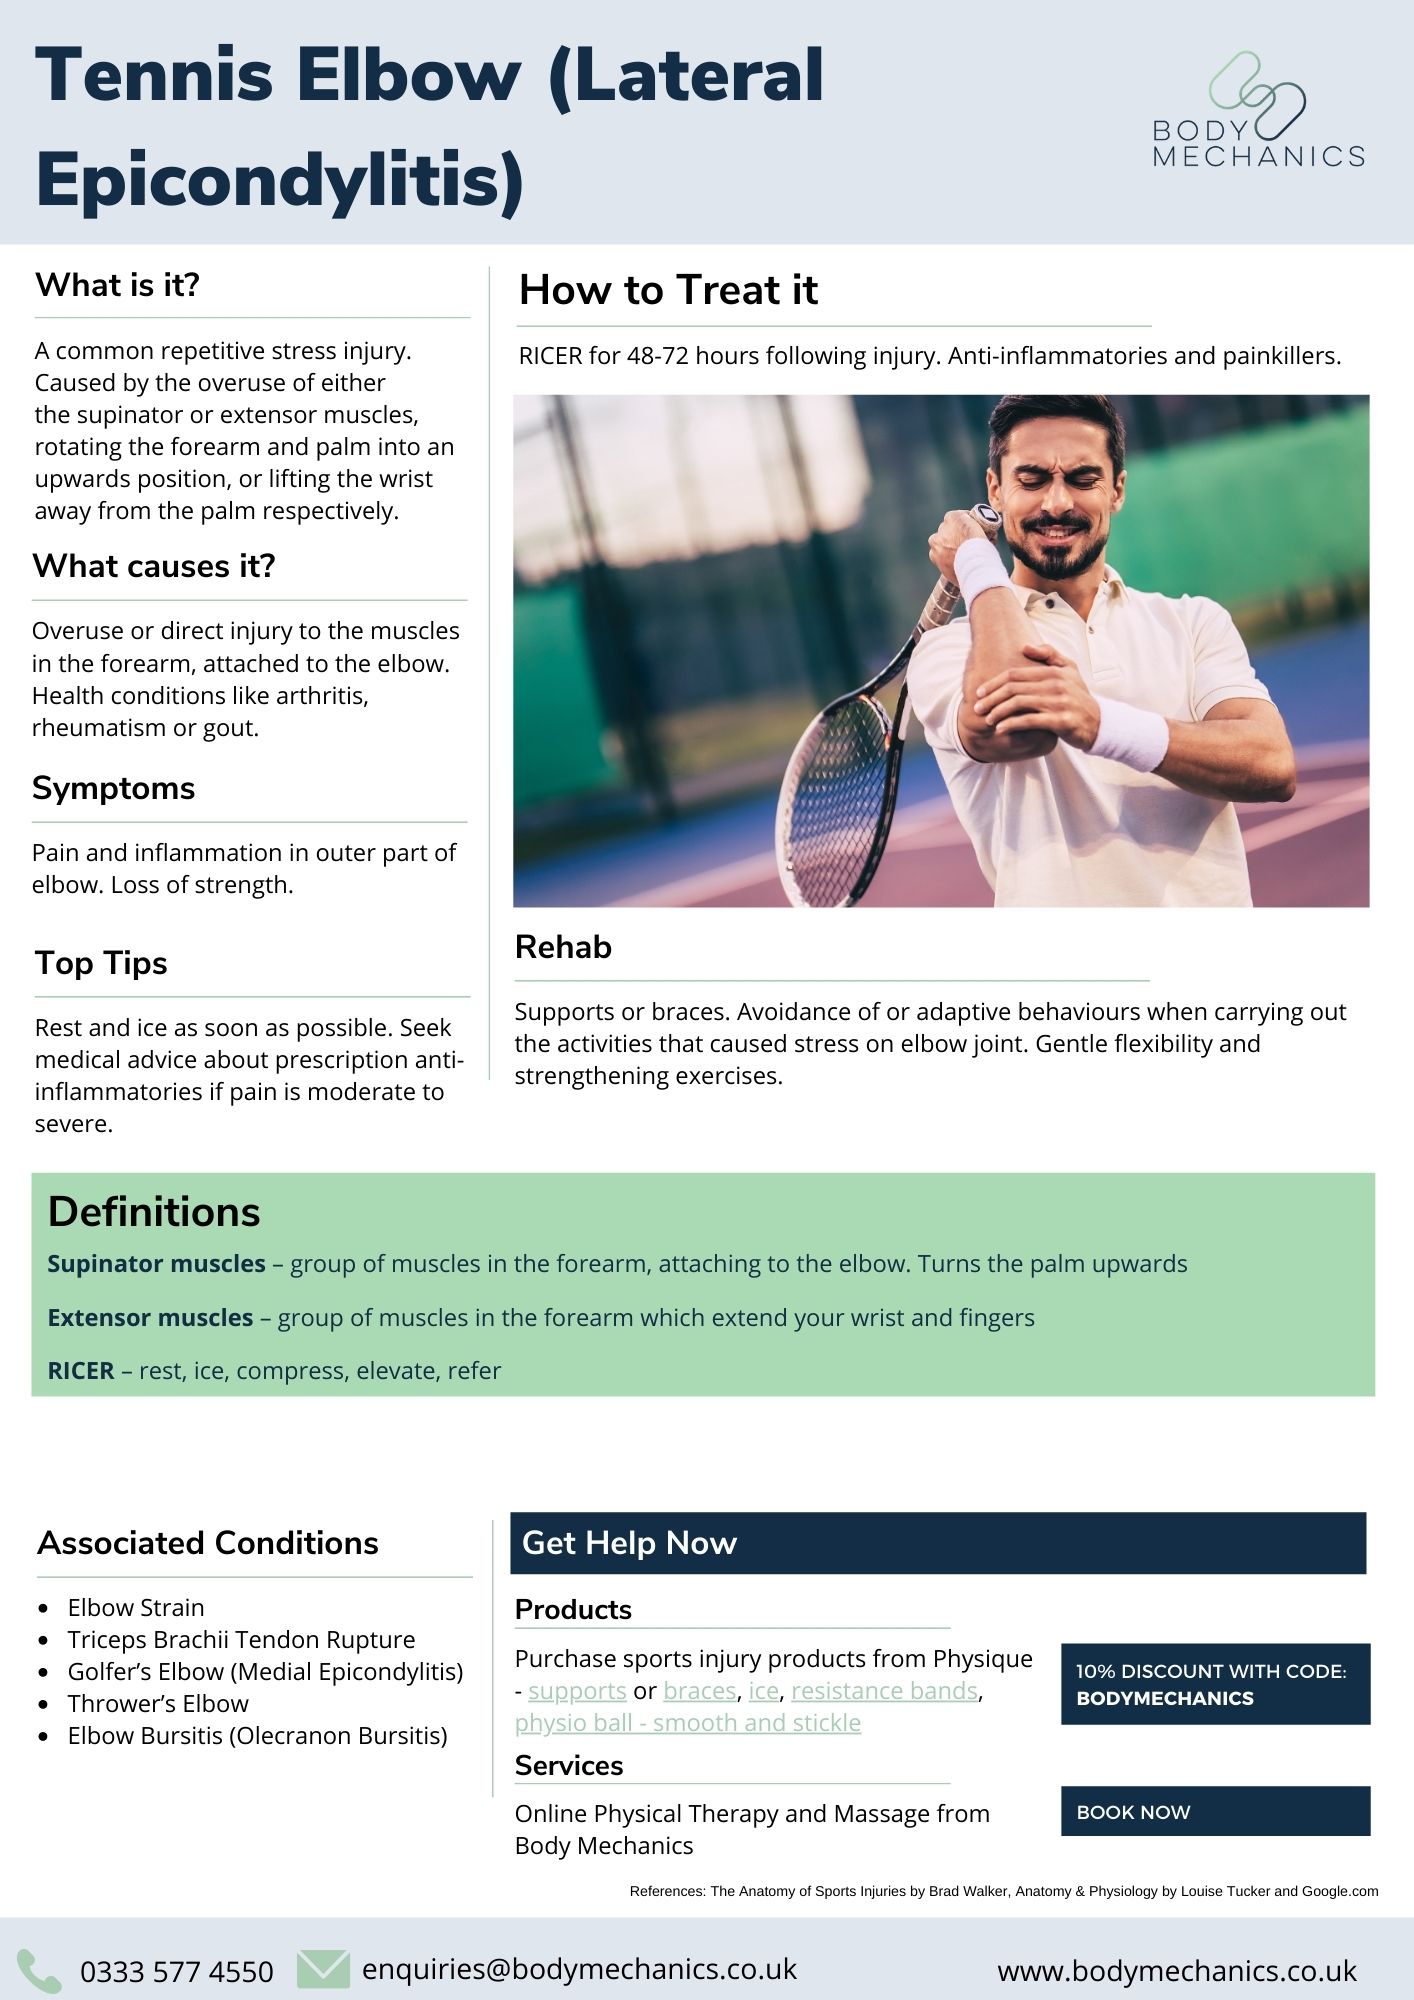 Tennis Elbow (Lateral Epicondylitis) Infosheet